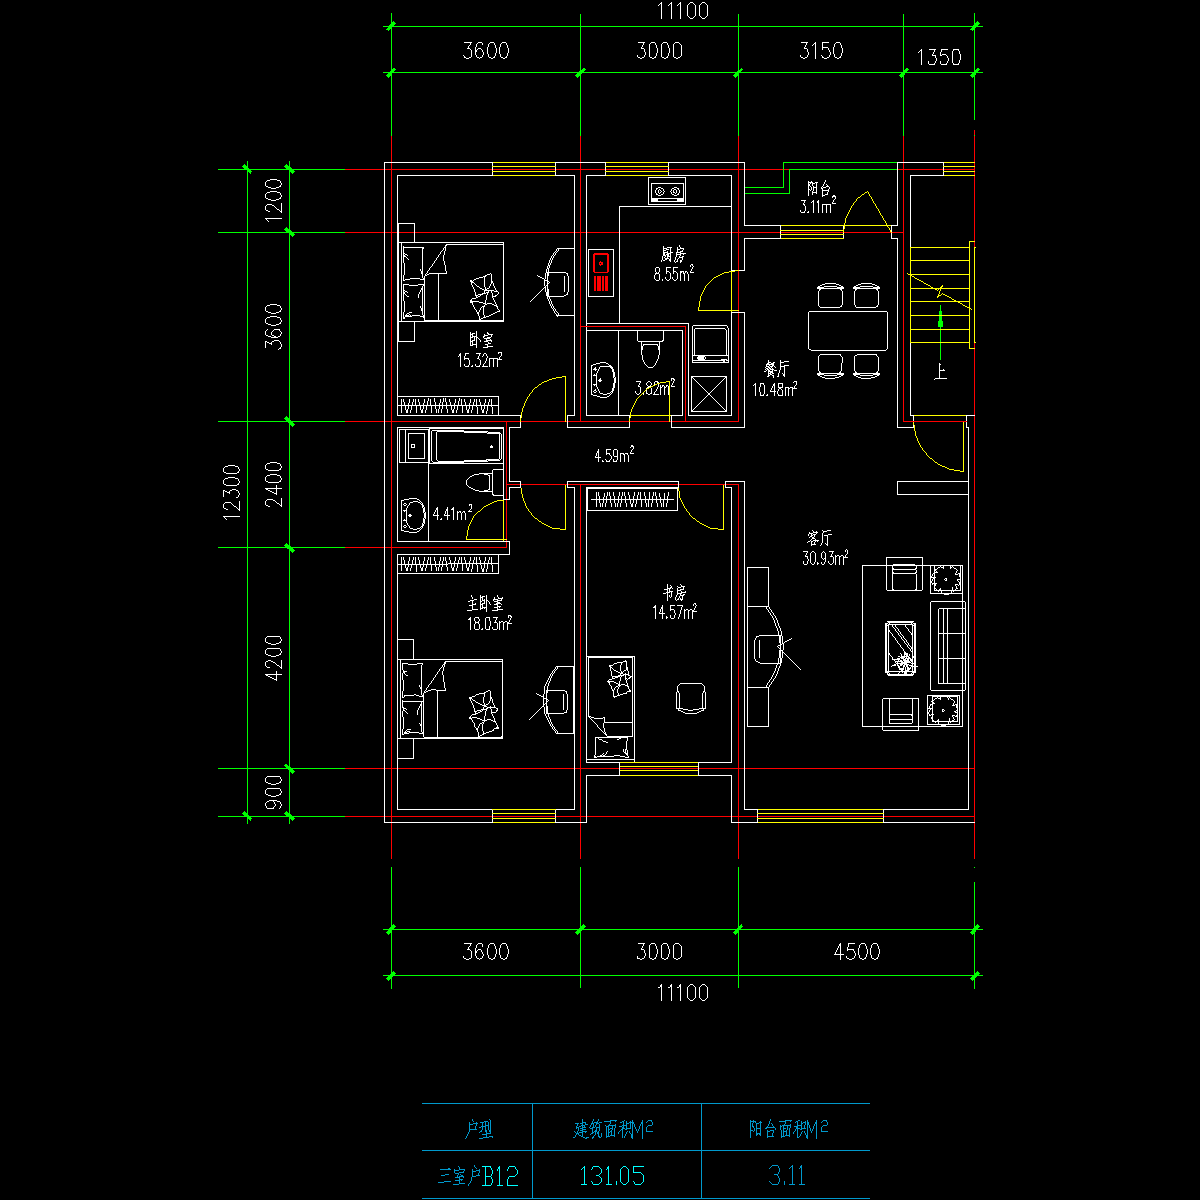 板式高层三室一厅单户户型CAD图纸(131)